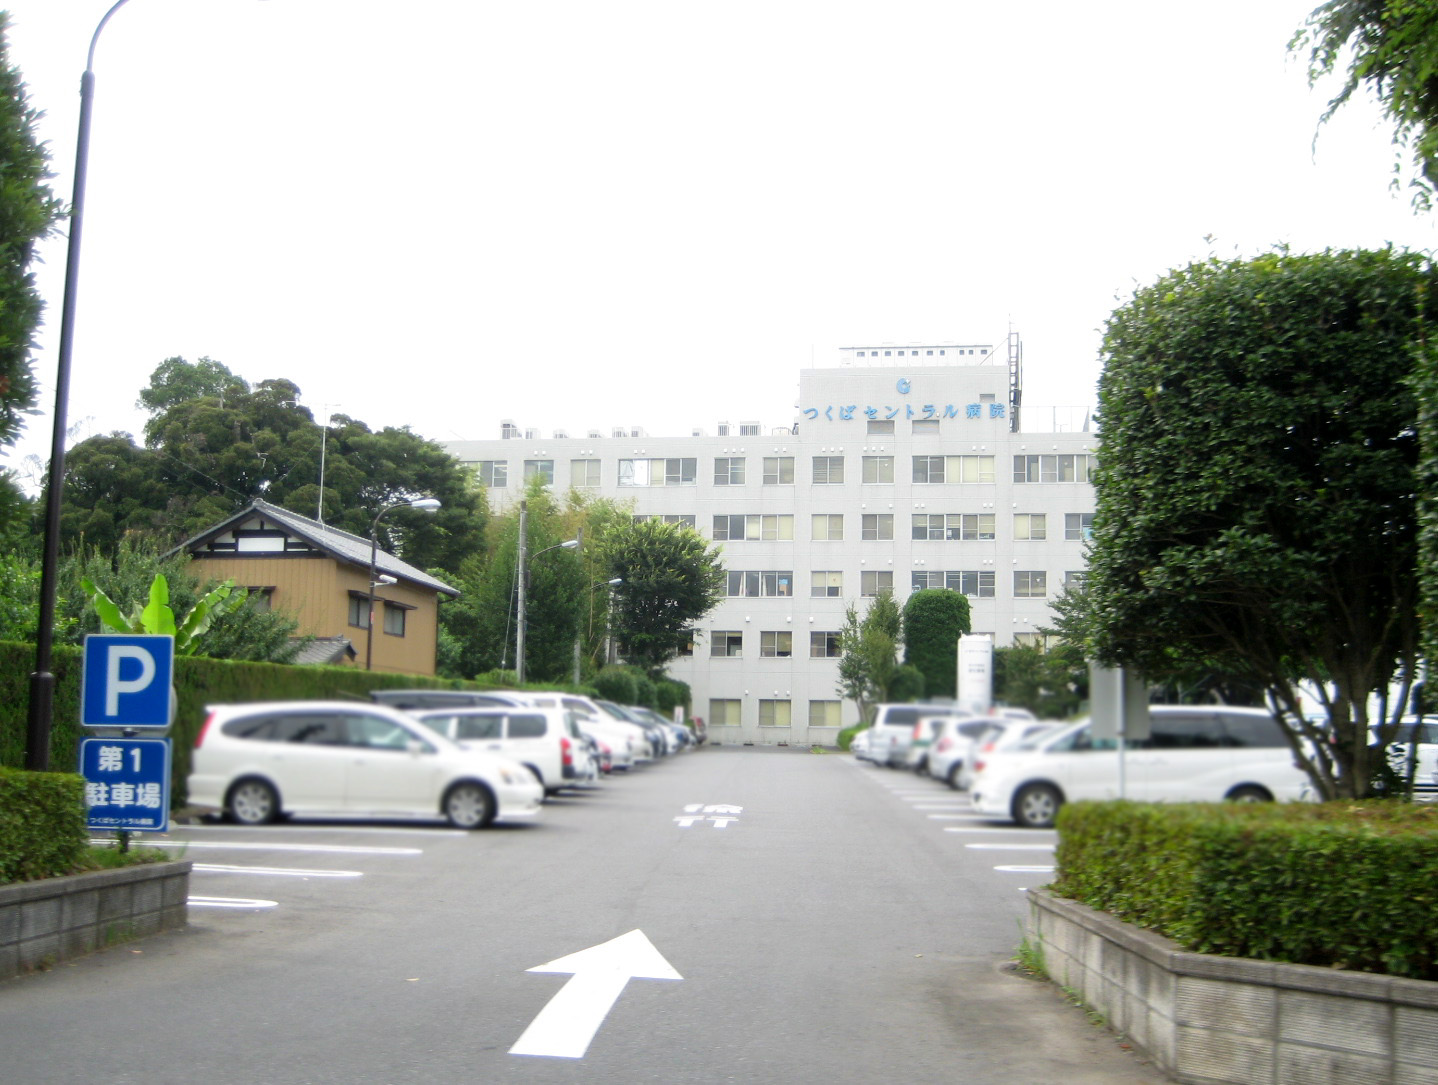 Hospital. 2500m to Tsukuba Central Hospital (Hospital)